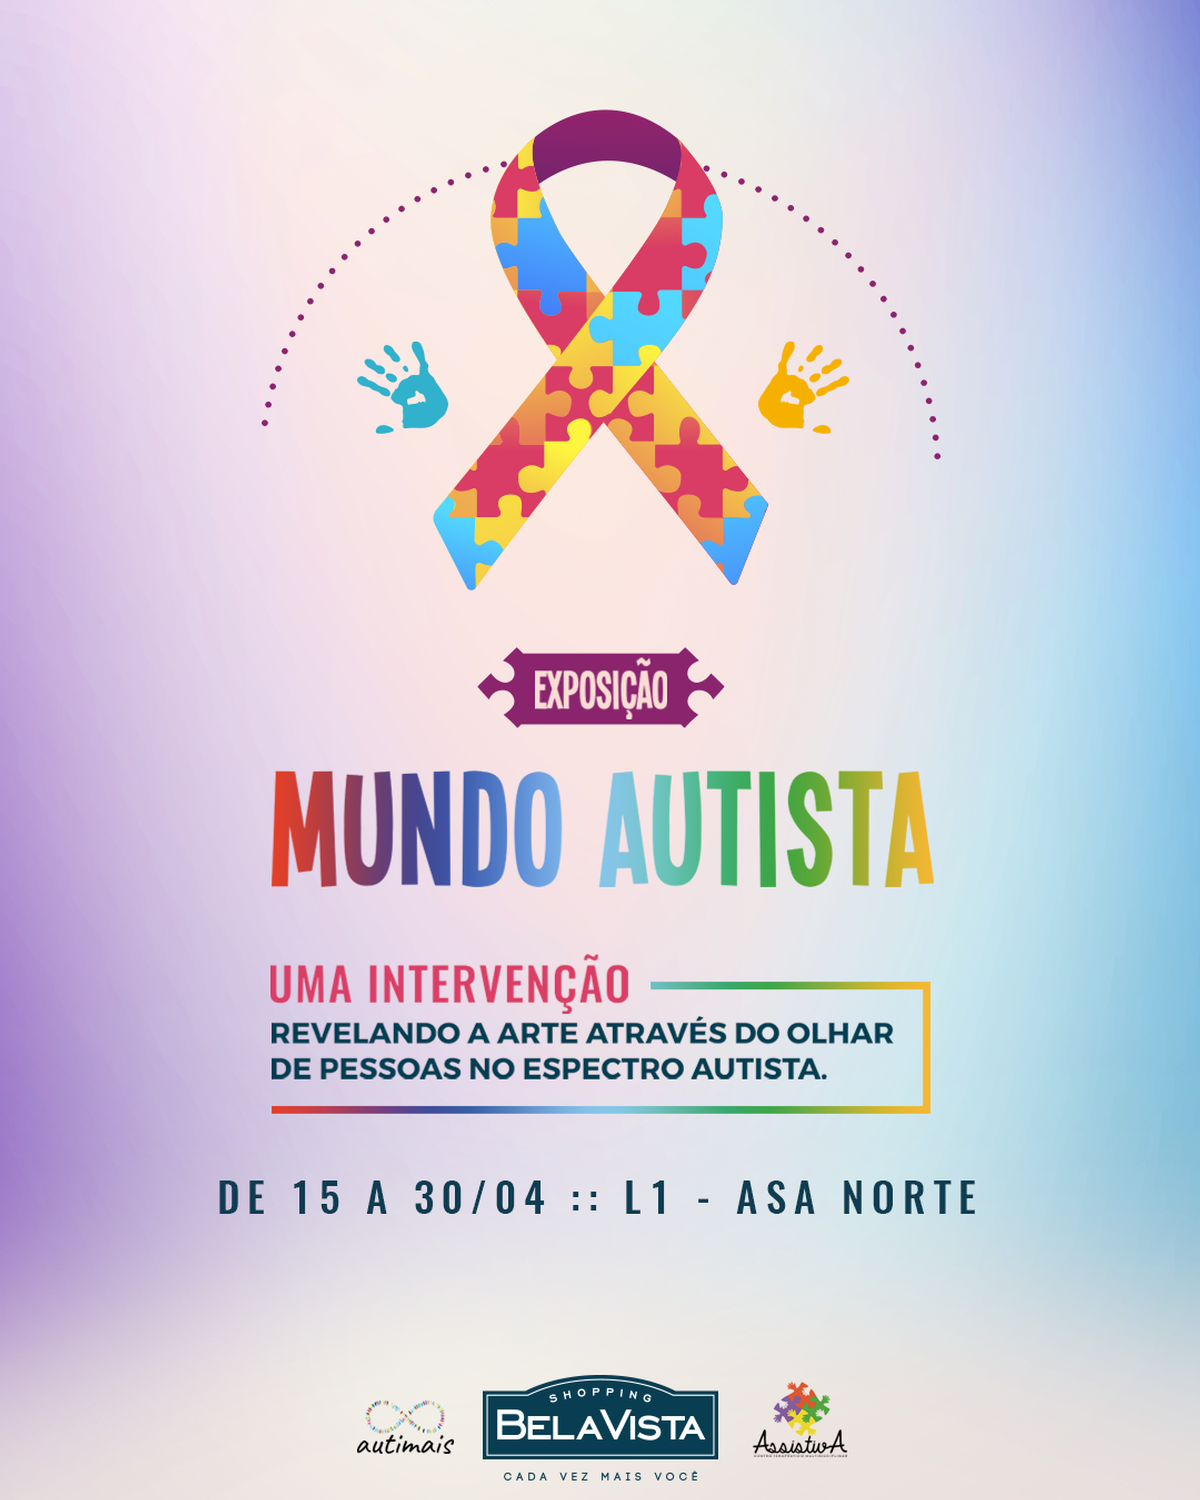 Abril Azul: Shopping Bela Vista realiza várias ações de conscientização sobre o autismo durante o mês